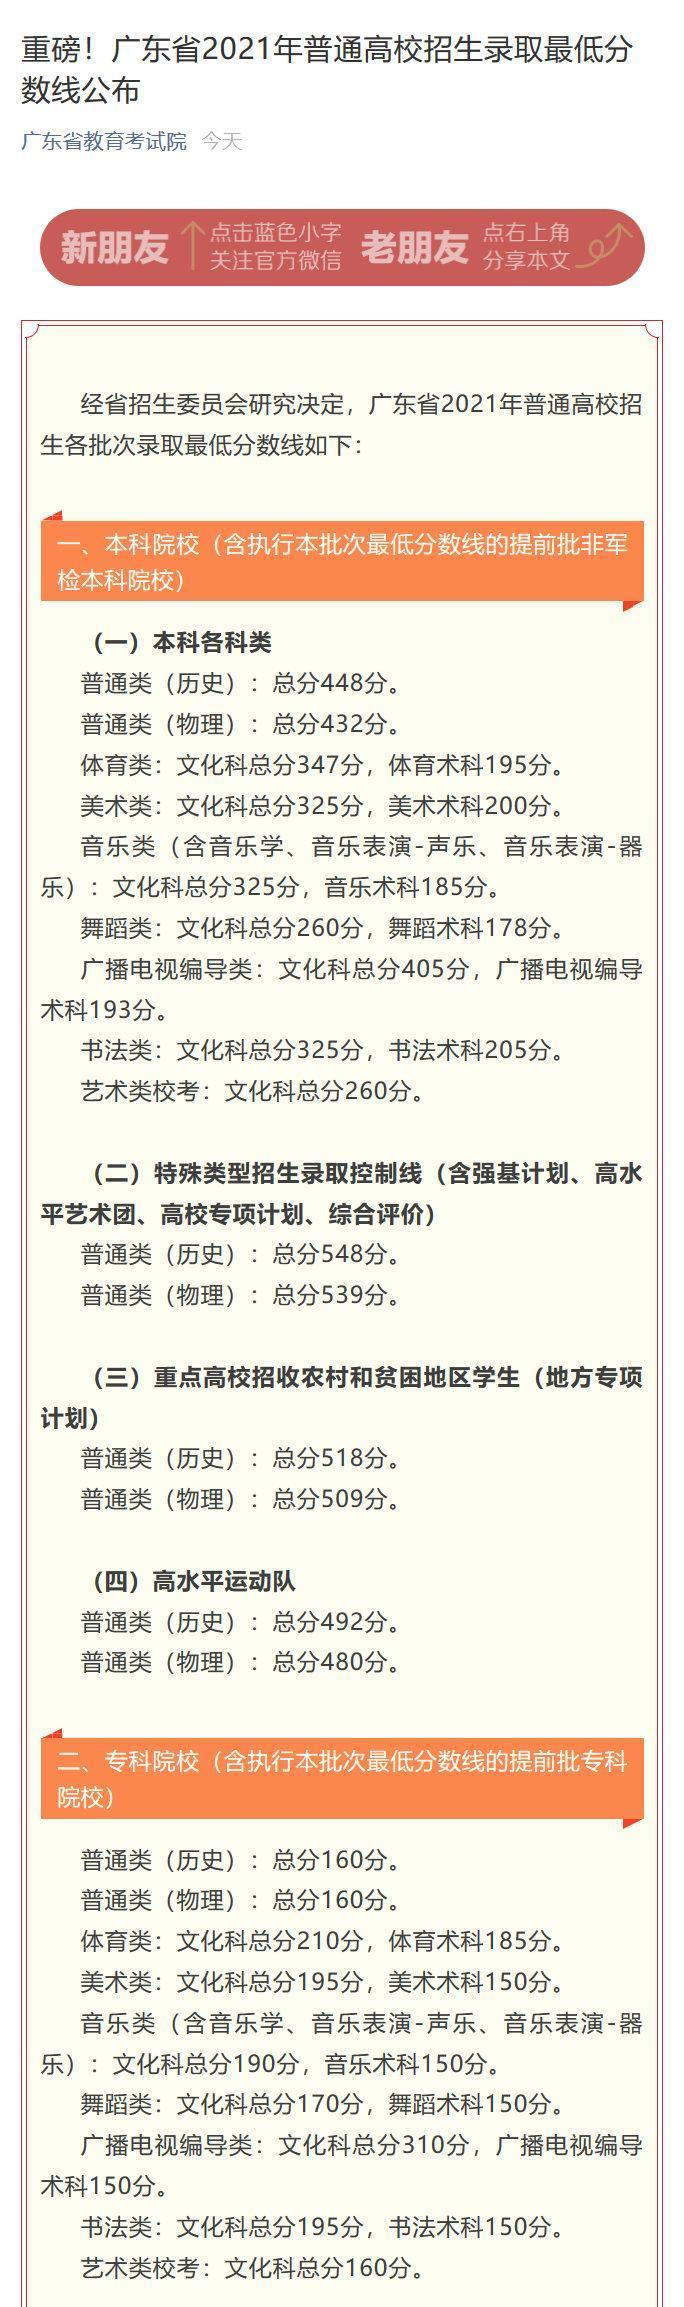 广东省2022年高考分数线出炉